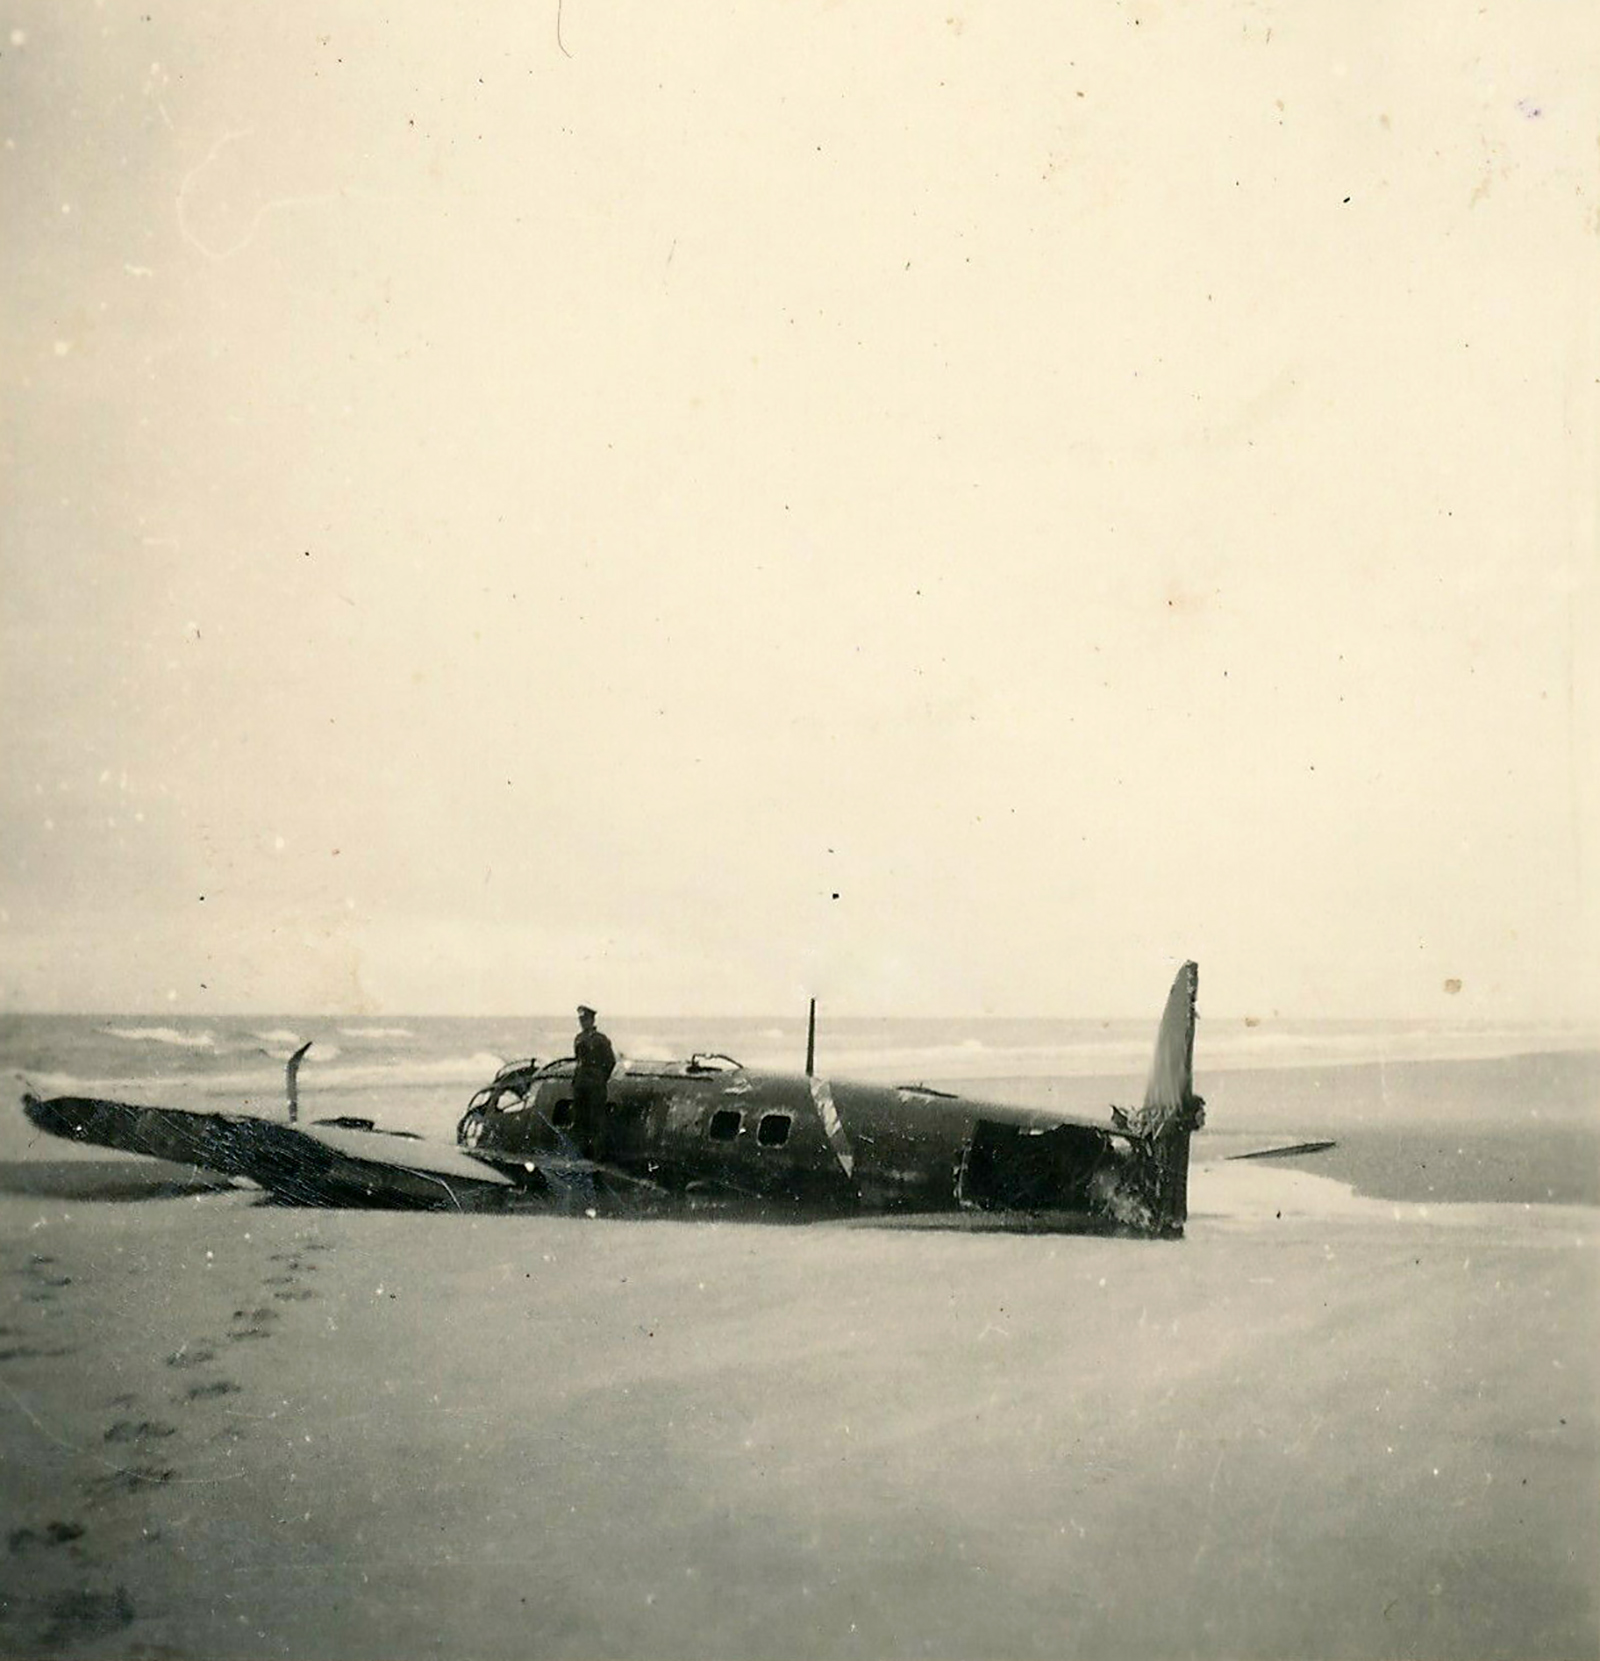 Heinkel He 111 lies abandoned after belly landing on a beach ebay 01